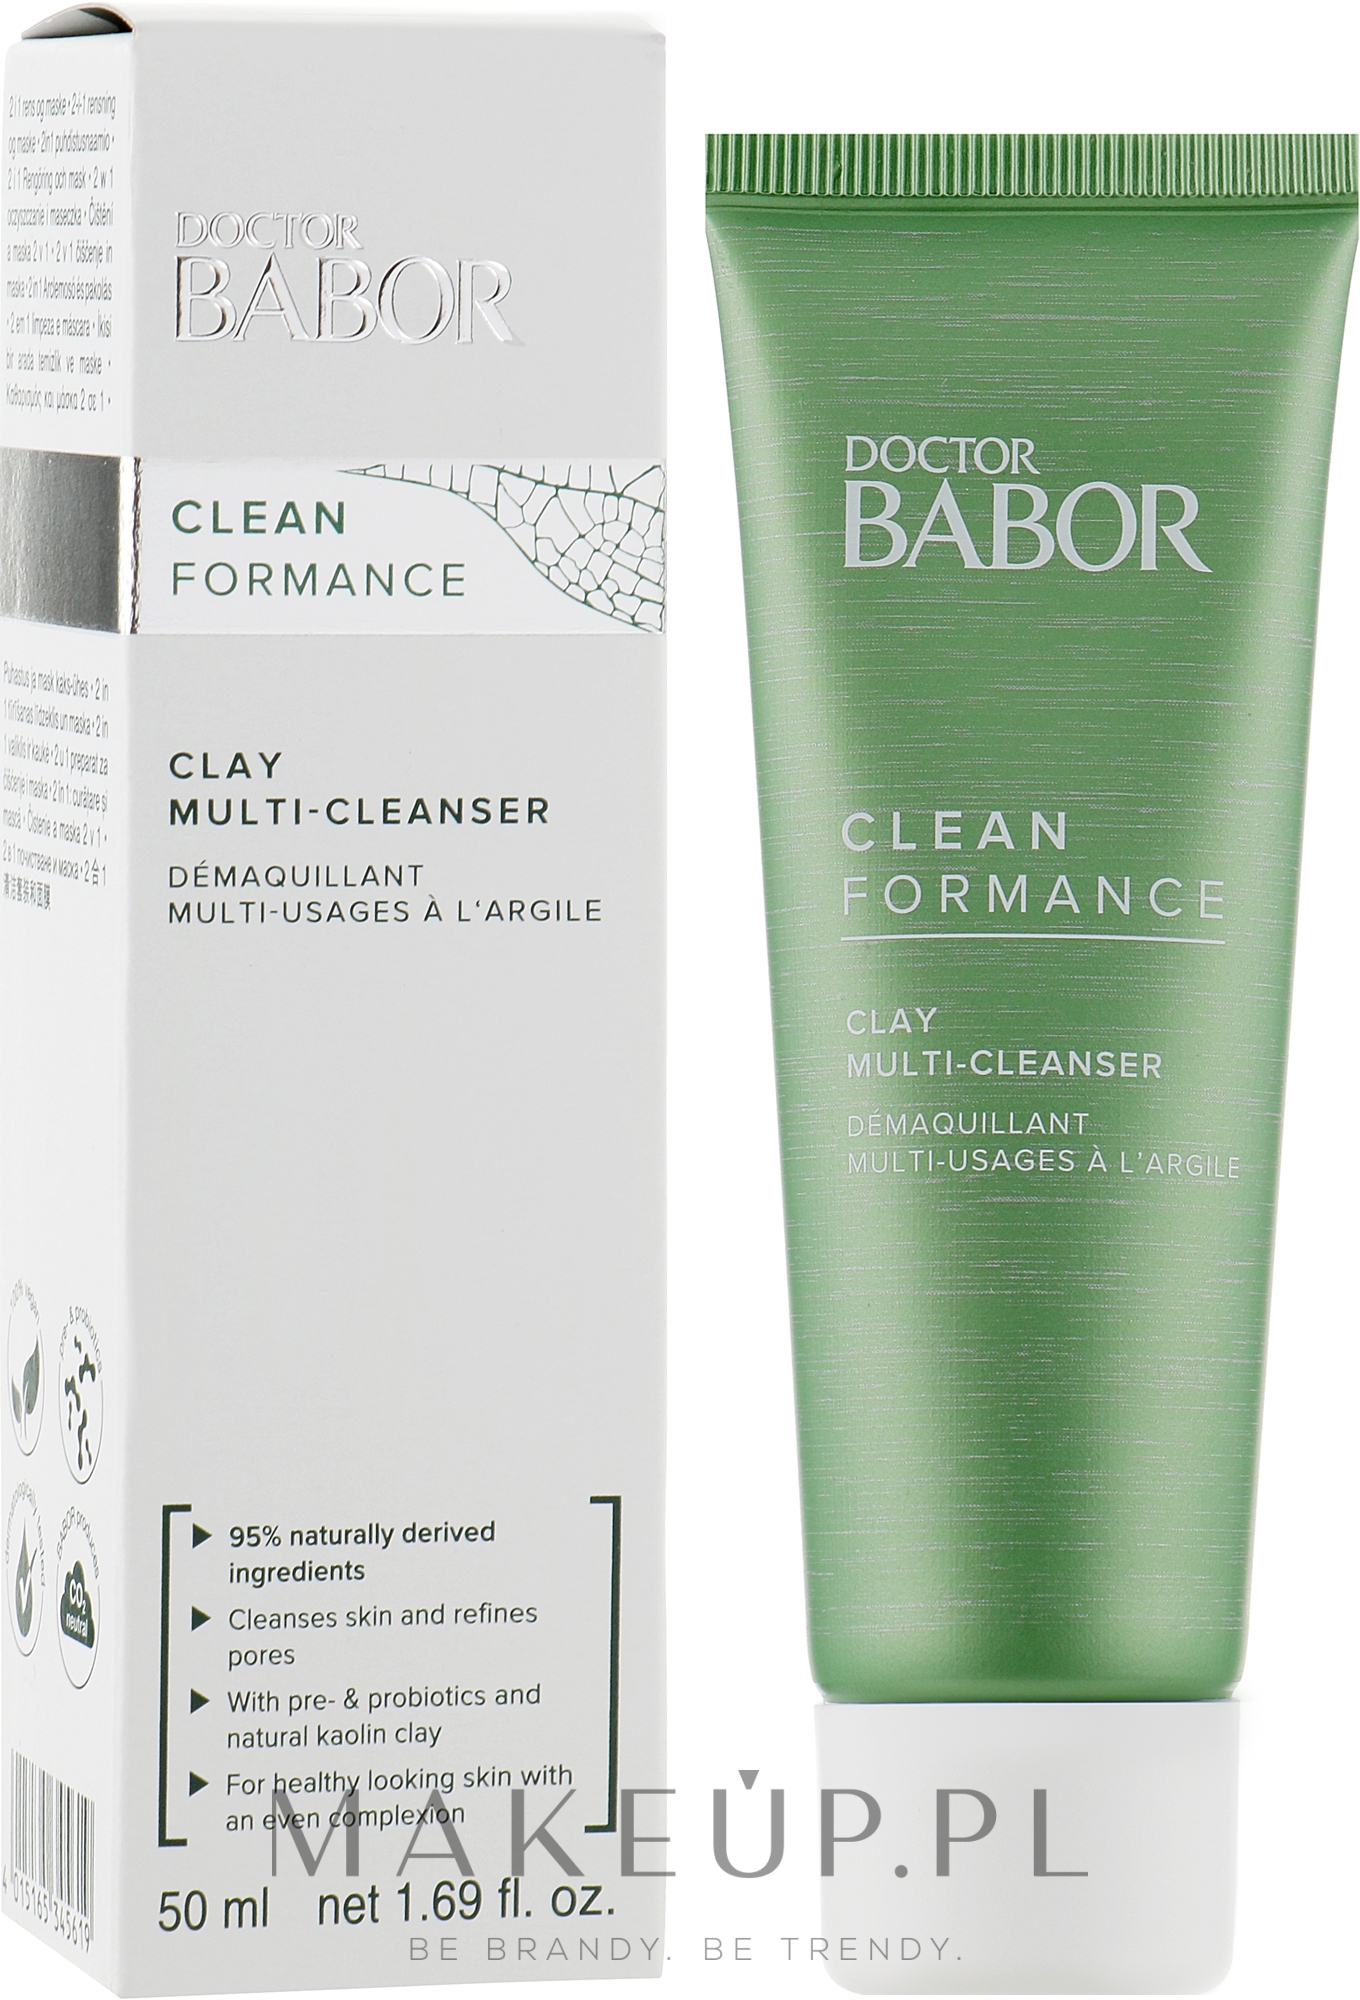 Glinka do oczyszczania twarzy i maseczka w jednym - Babor Doctor Babor Clean Formance Clay Multi-Cleanser — Zdjęcie 50 ml